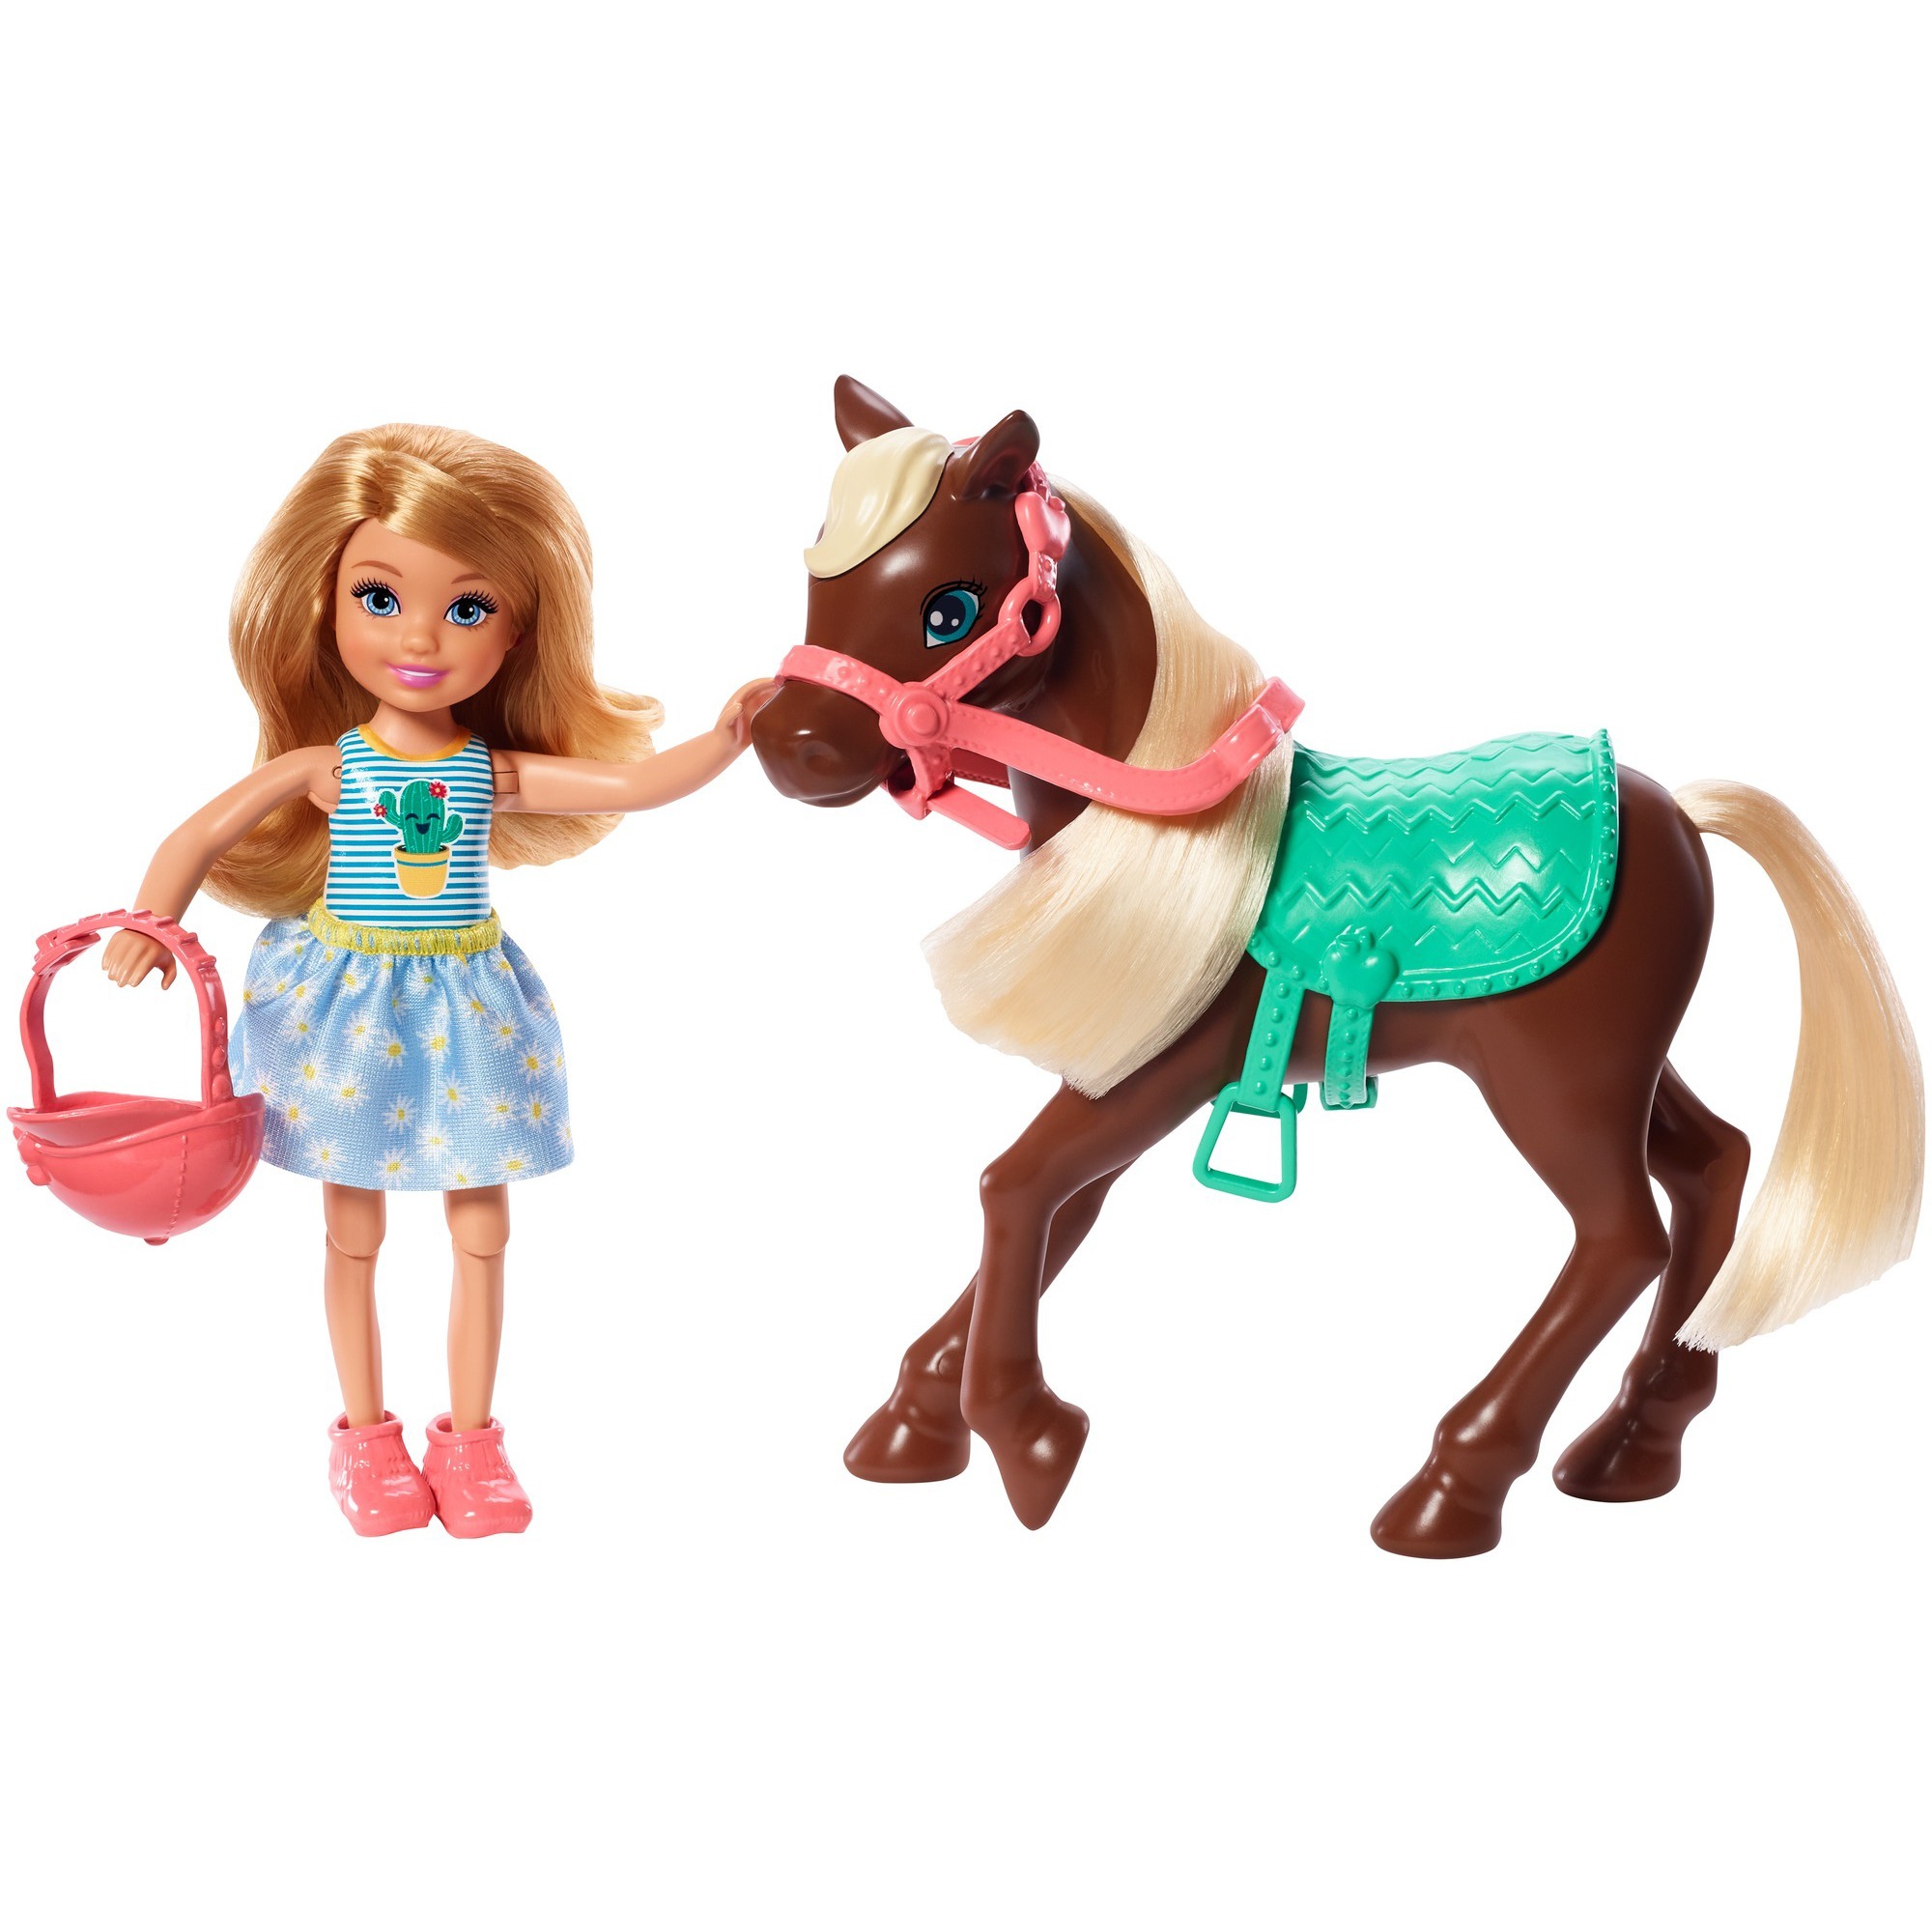 Image of Alternate - Barbie Chelsea Puppe & Pony (blond) online einkaufen bei Alternate